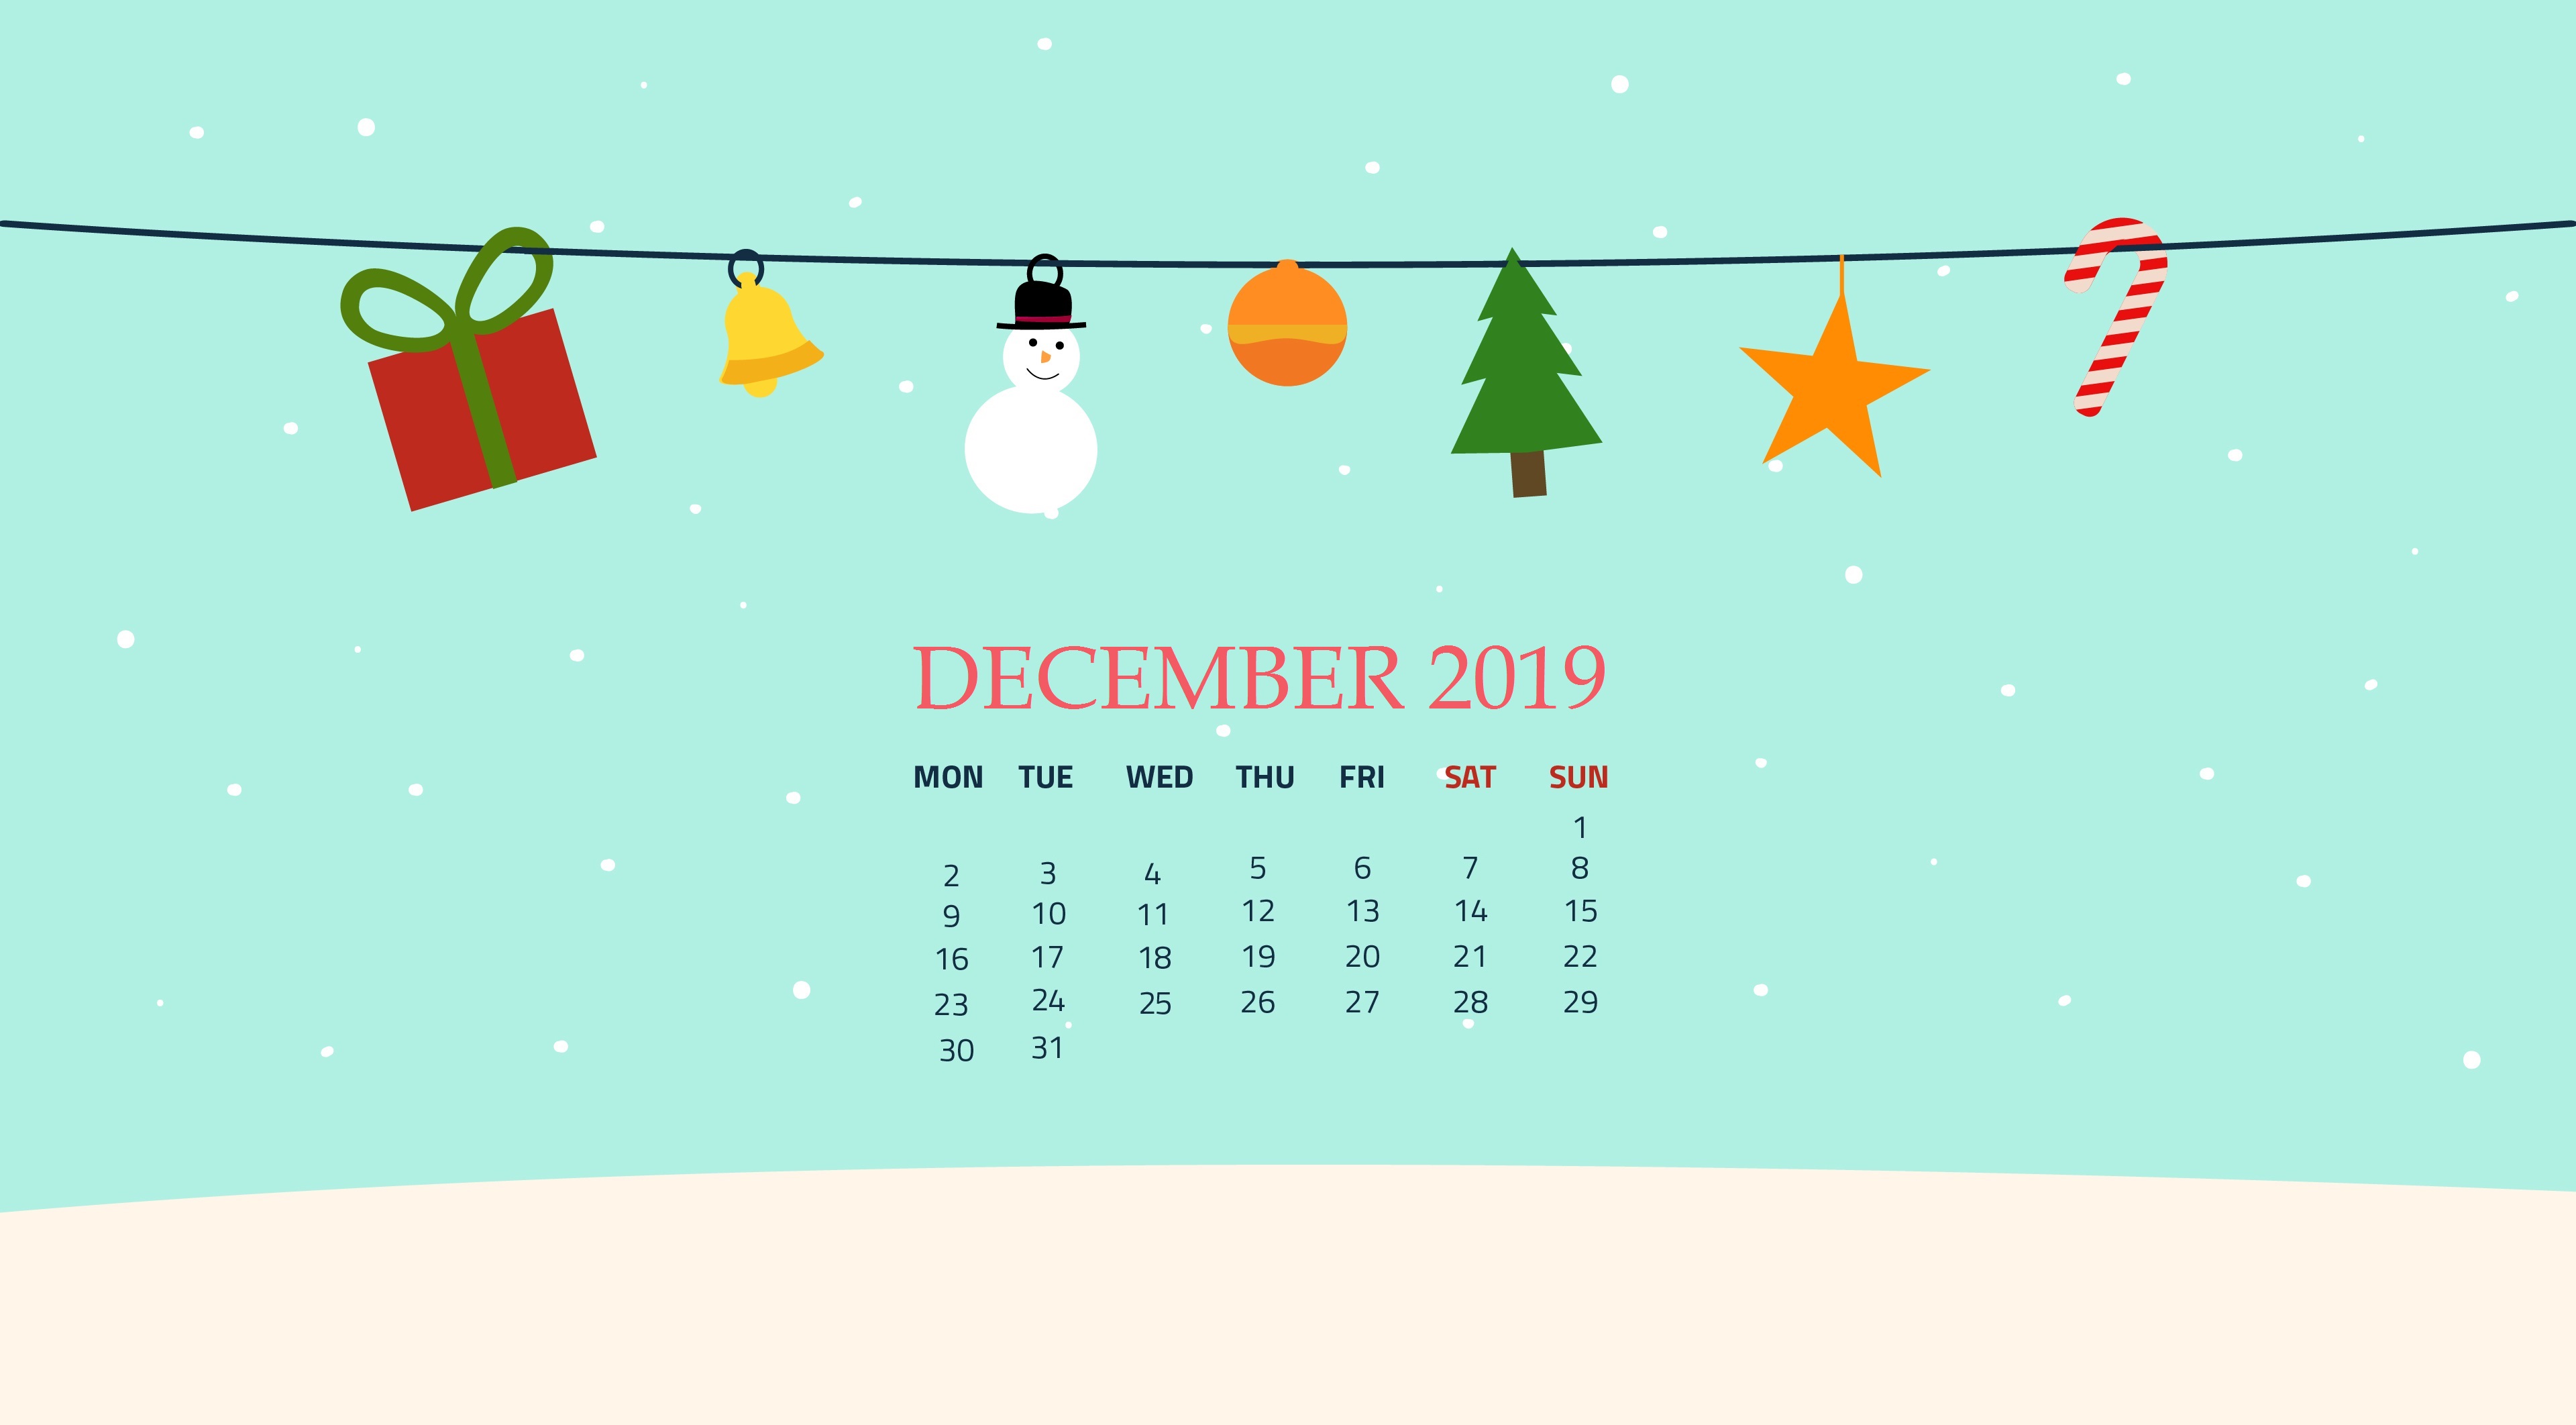 Free December 2019 Wallpaper - December Calendar Wallpaper 2019 - HD Wallpaper 